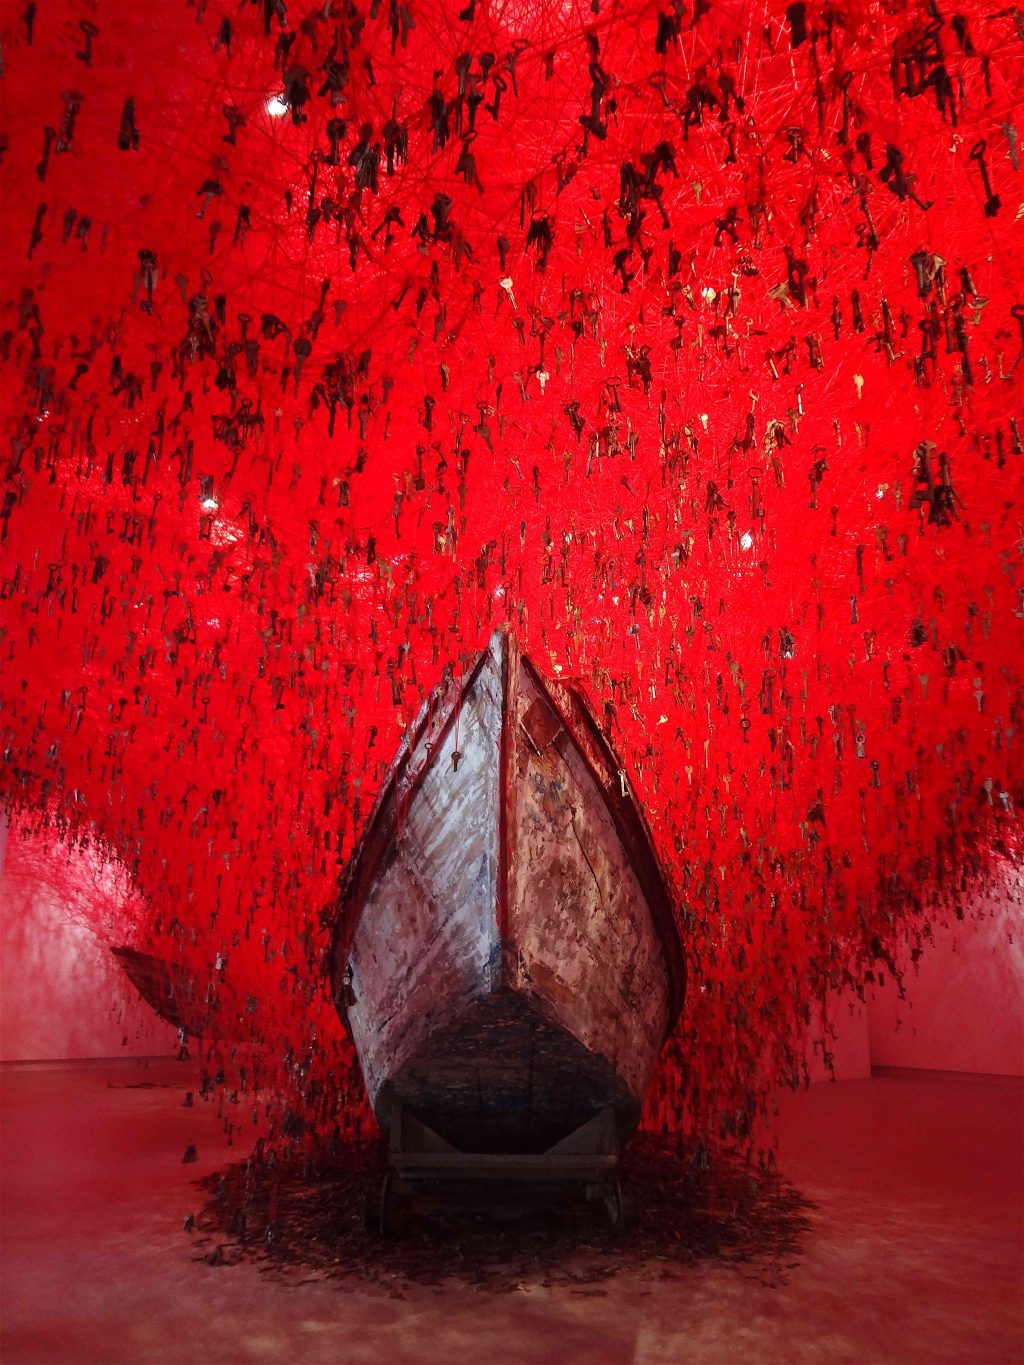 塩田千春 SHIOTA Chiharu「掌の鍵」“The Key in the Hand” @ ヴェネツィア・ ビエンナーレ 日本館 Venice Biennale, Japan Pavilion 2015